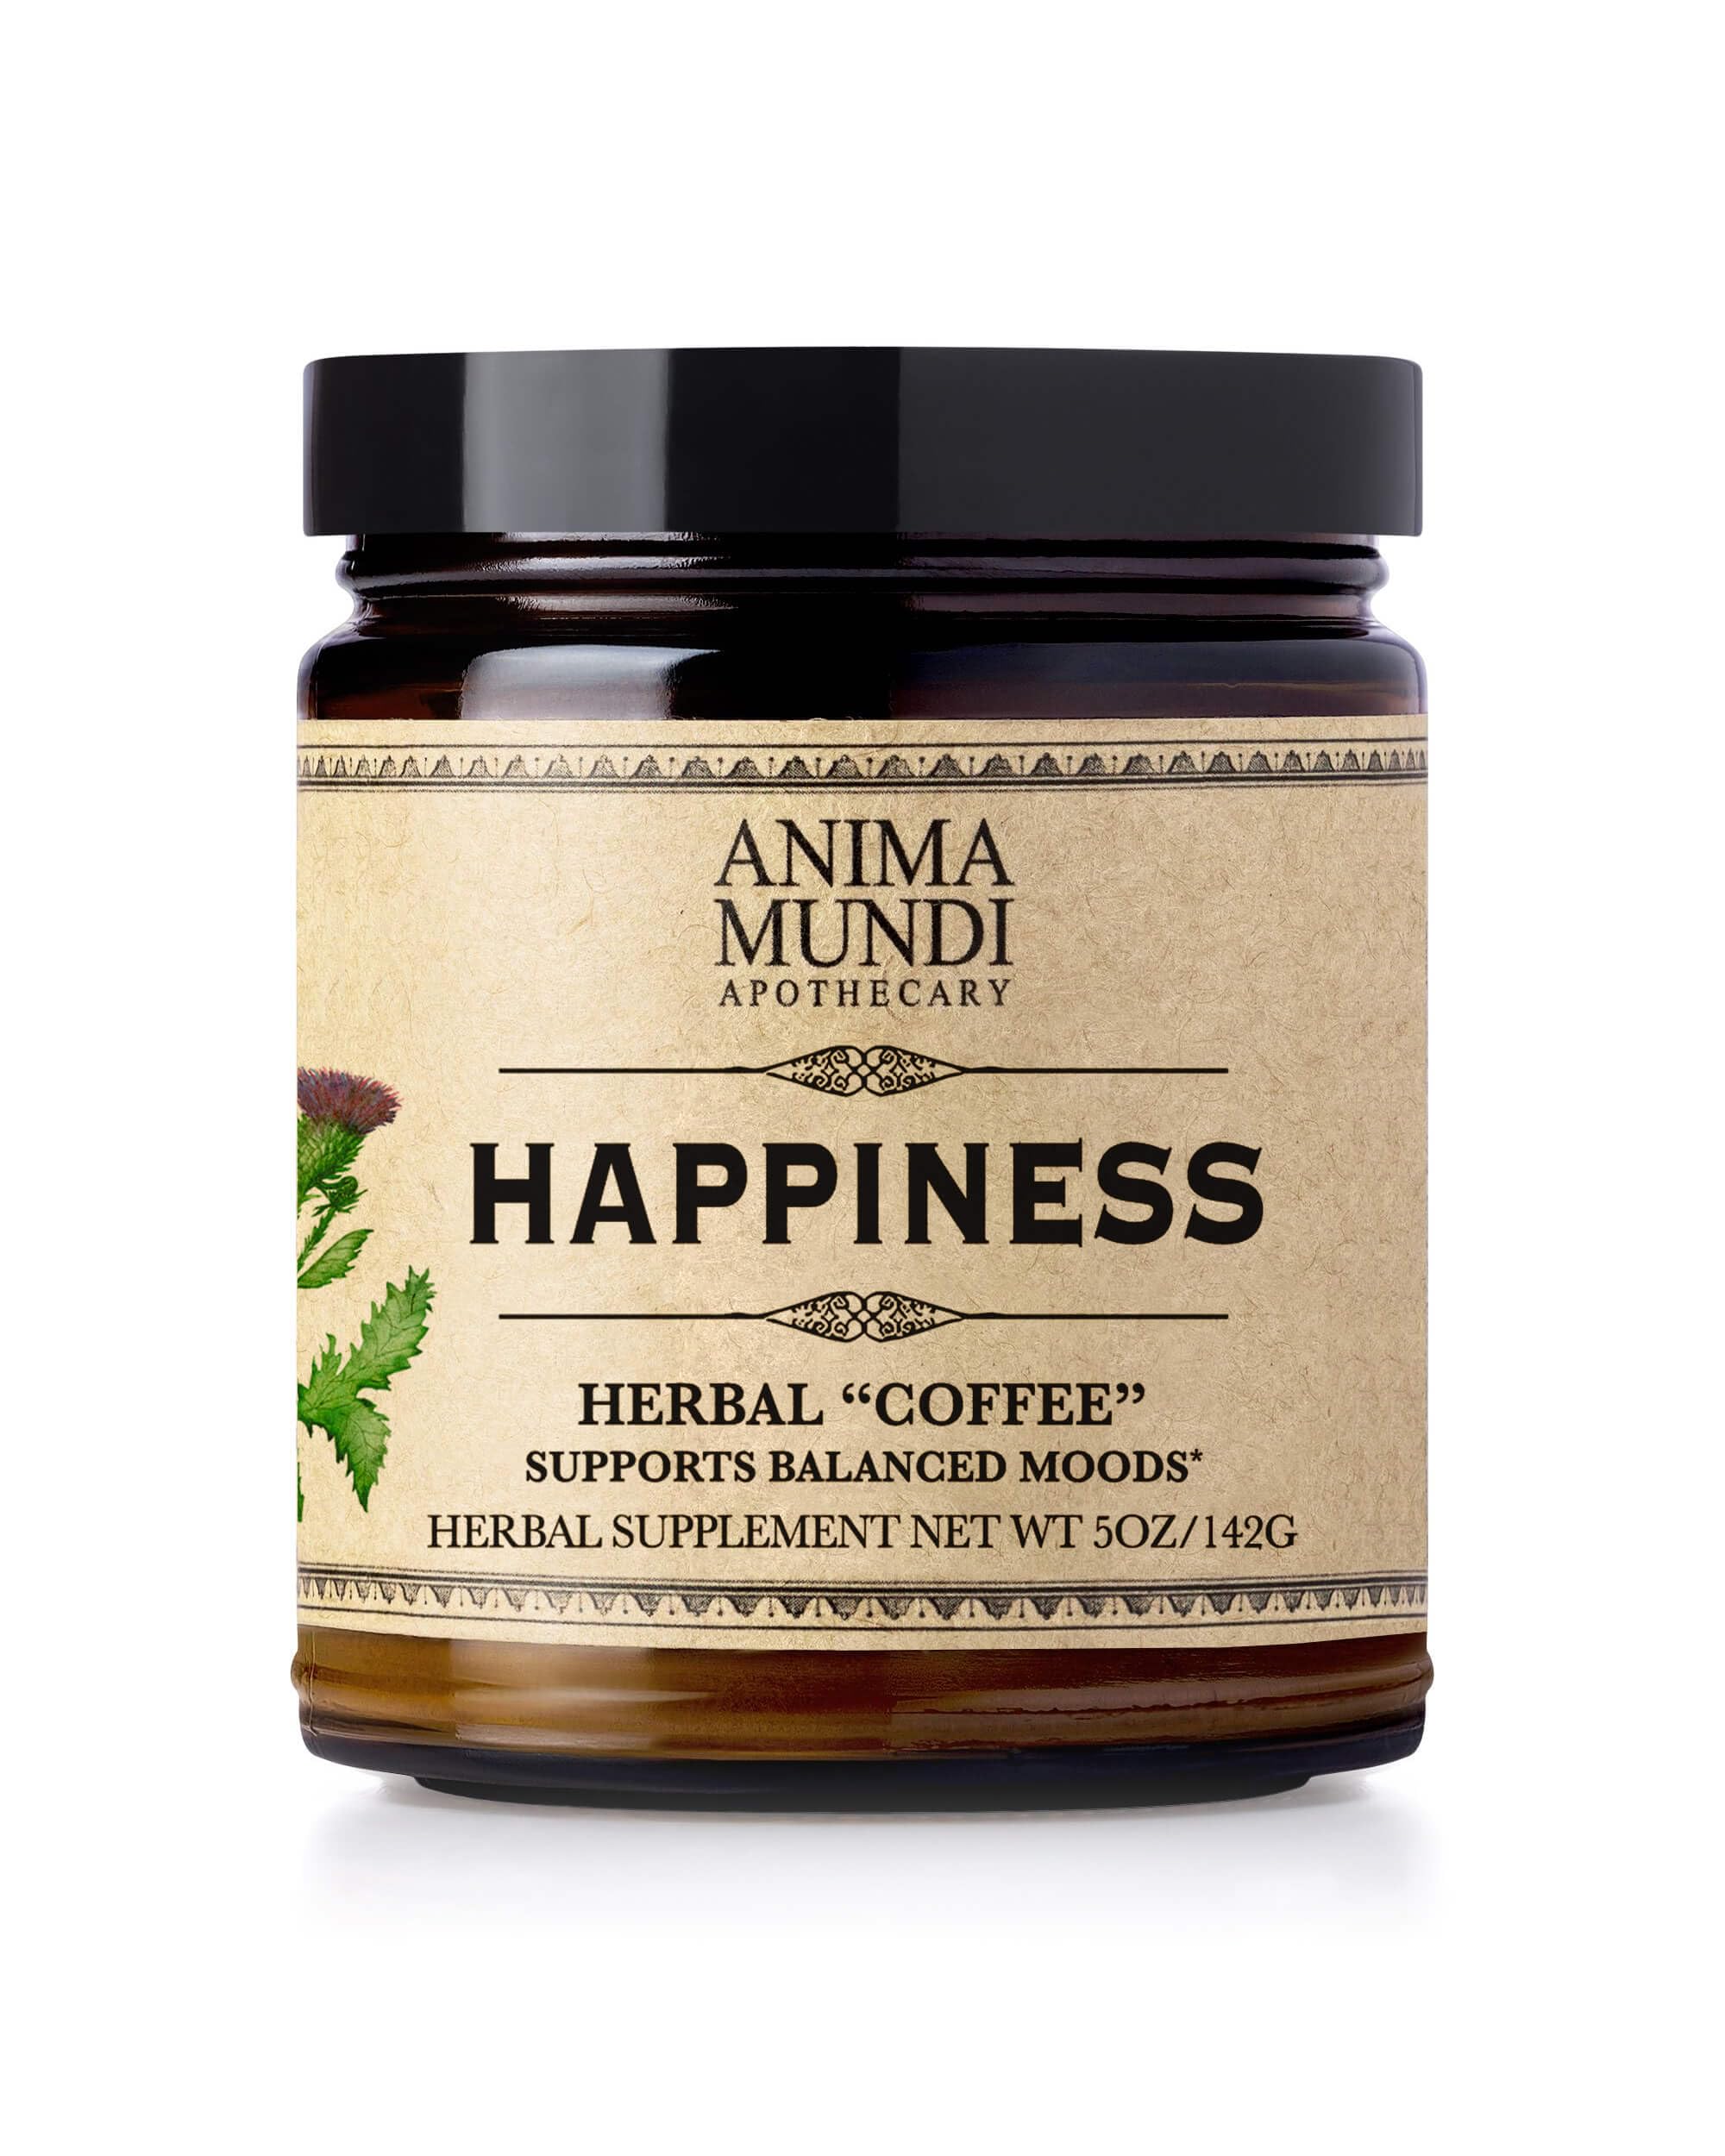 Anima Mundi Organic Happiness Powder, směs bylin pro uklidnění, BIO, 141 g